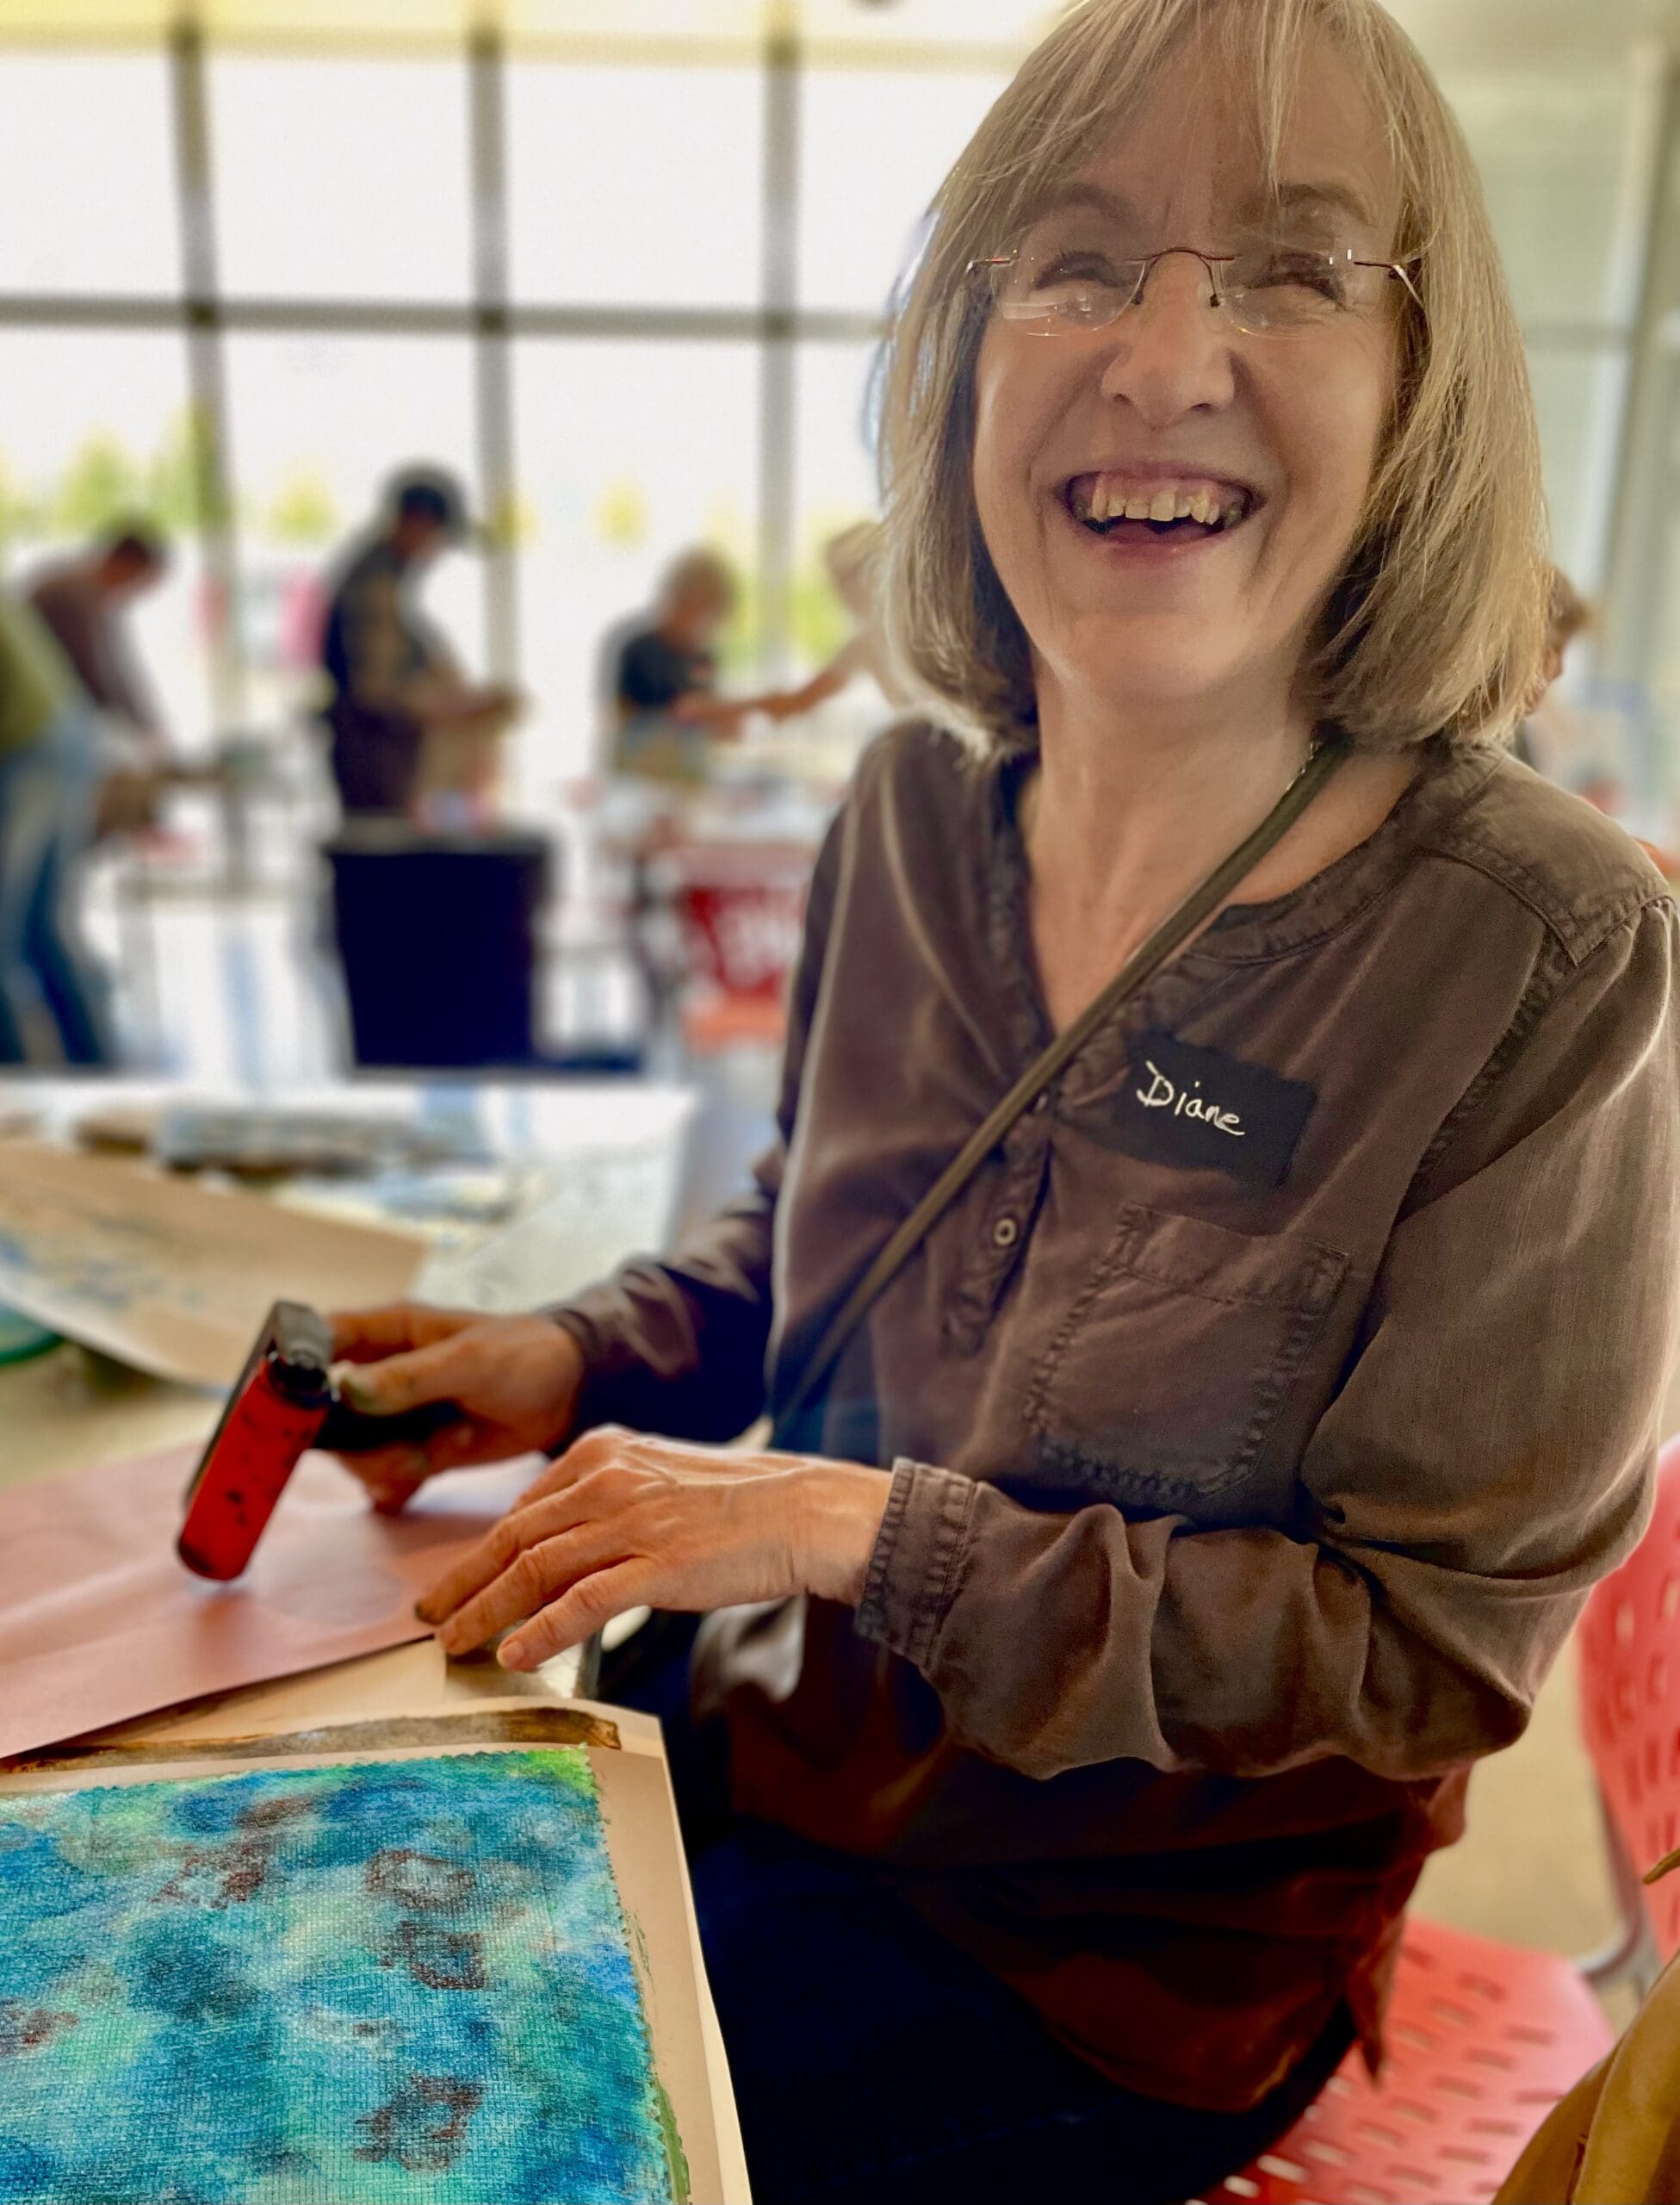 Smiling senior woman making art